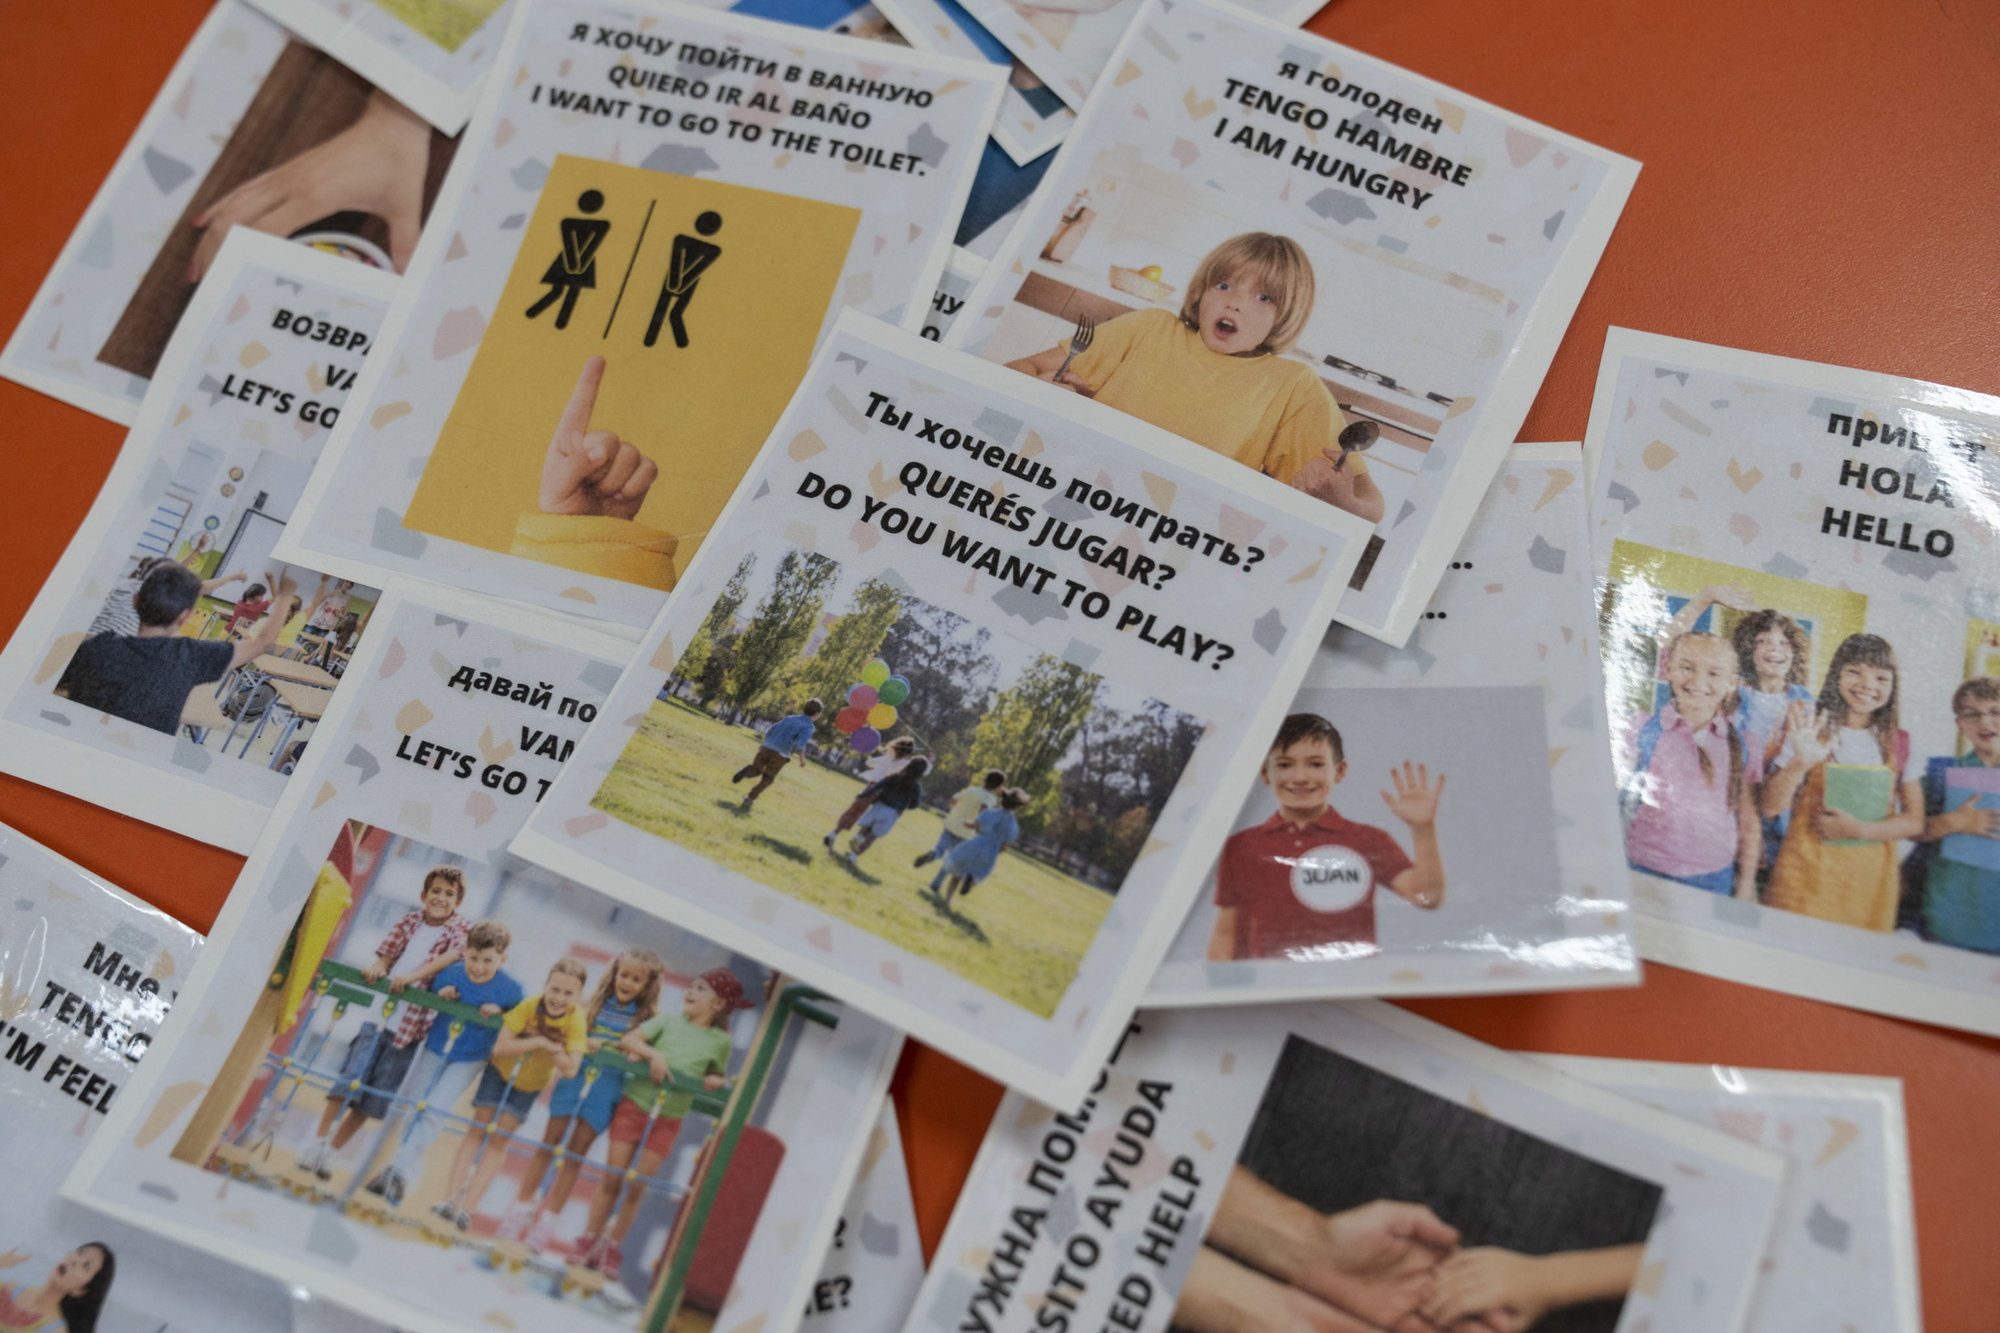 Las tarjetas con mensajes en español traducidas al inglés y ruso son acompañadas por fotos y dibujos para los alumnos que recién están aprendiendo a leer y escribir